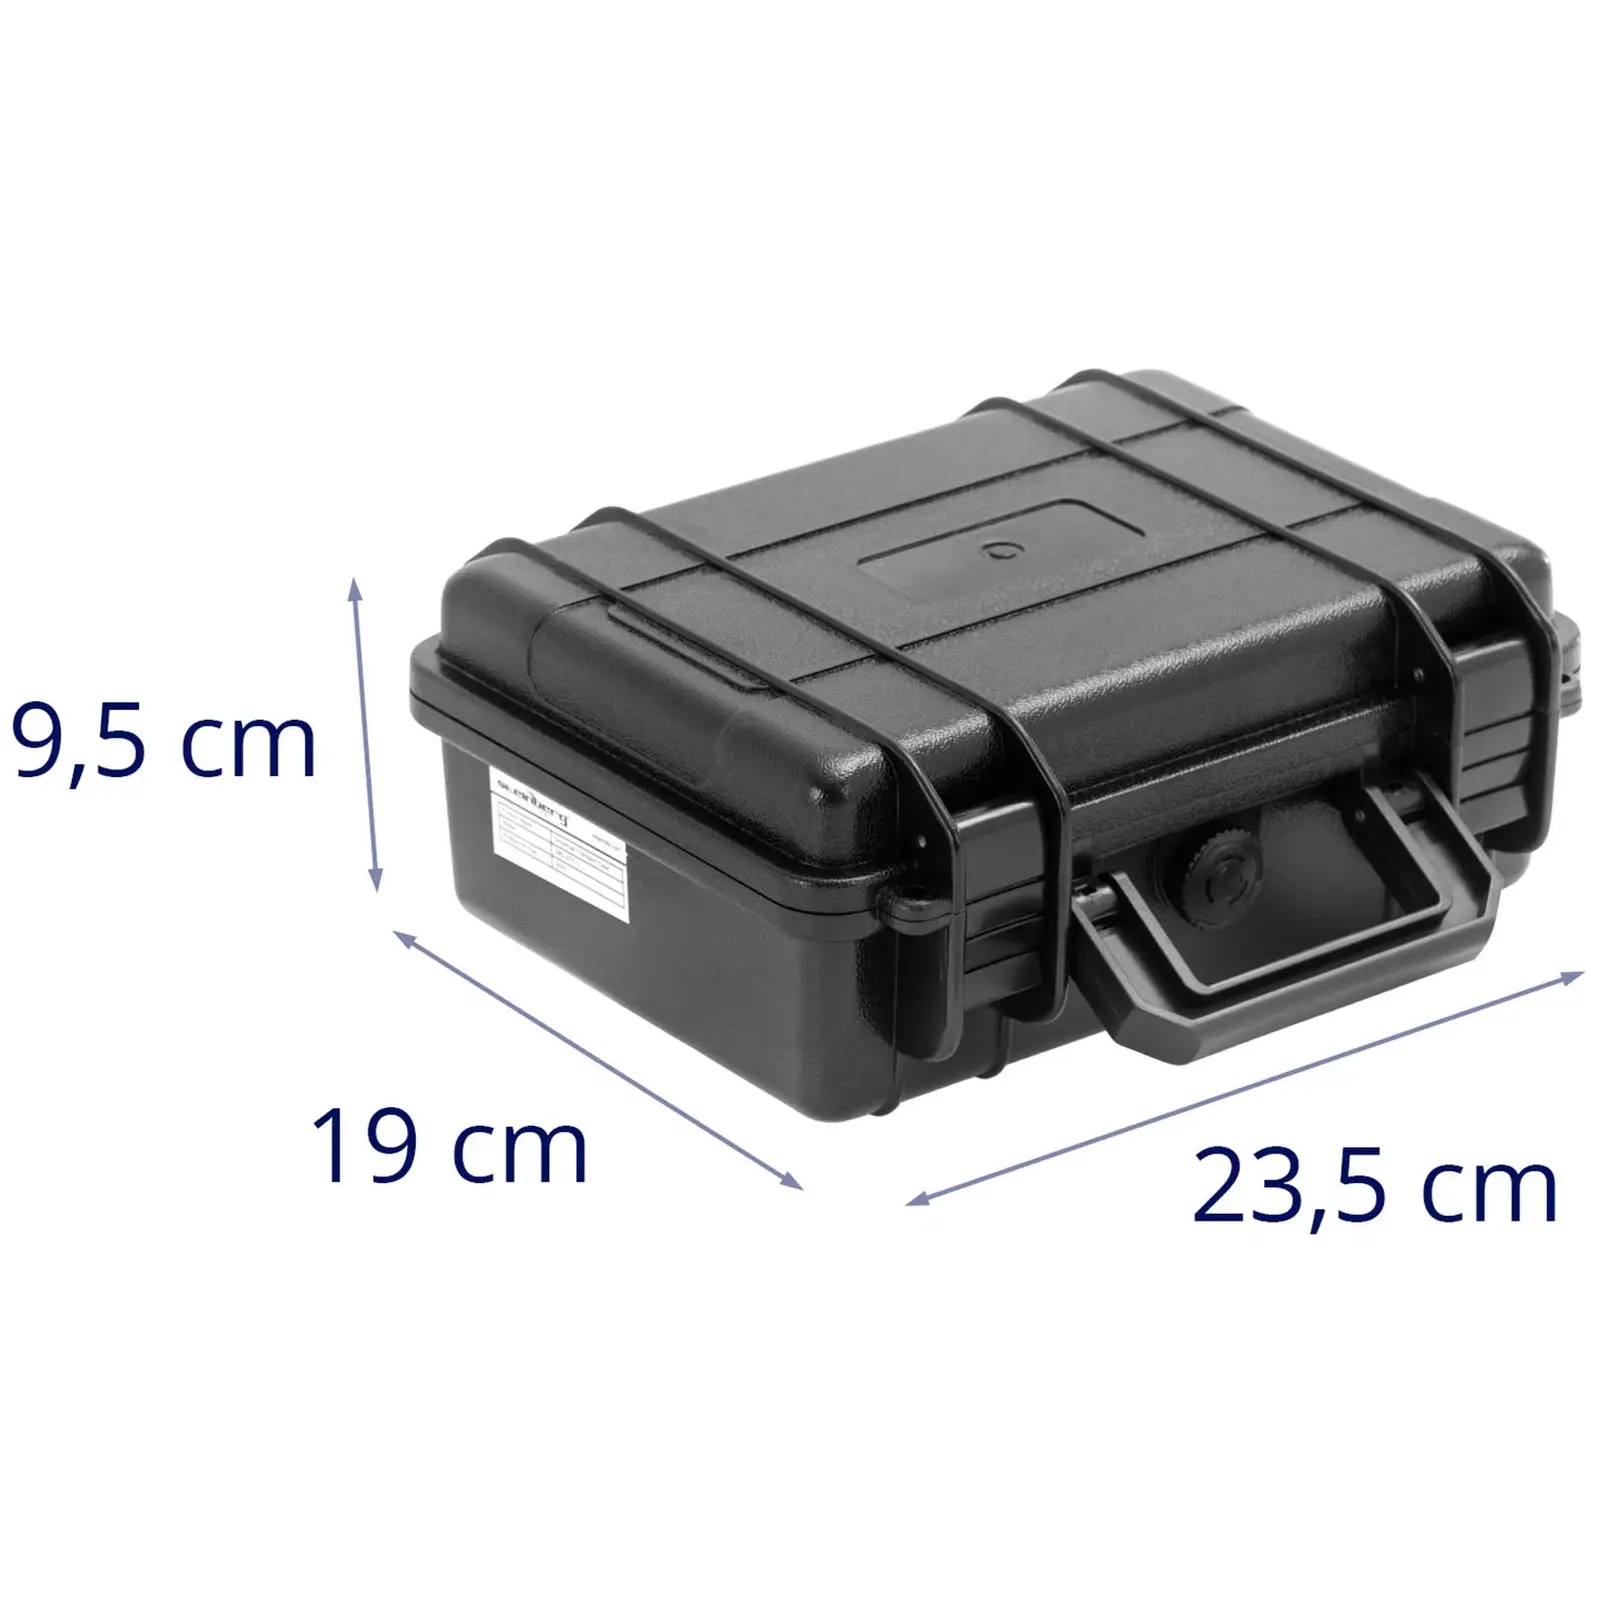 Hardt kameraveske - vanntett - 2 l - svart - 21.5 x 14.5 x 8.5  cm